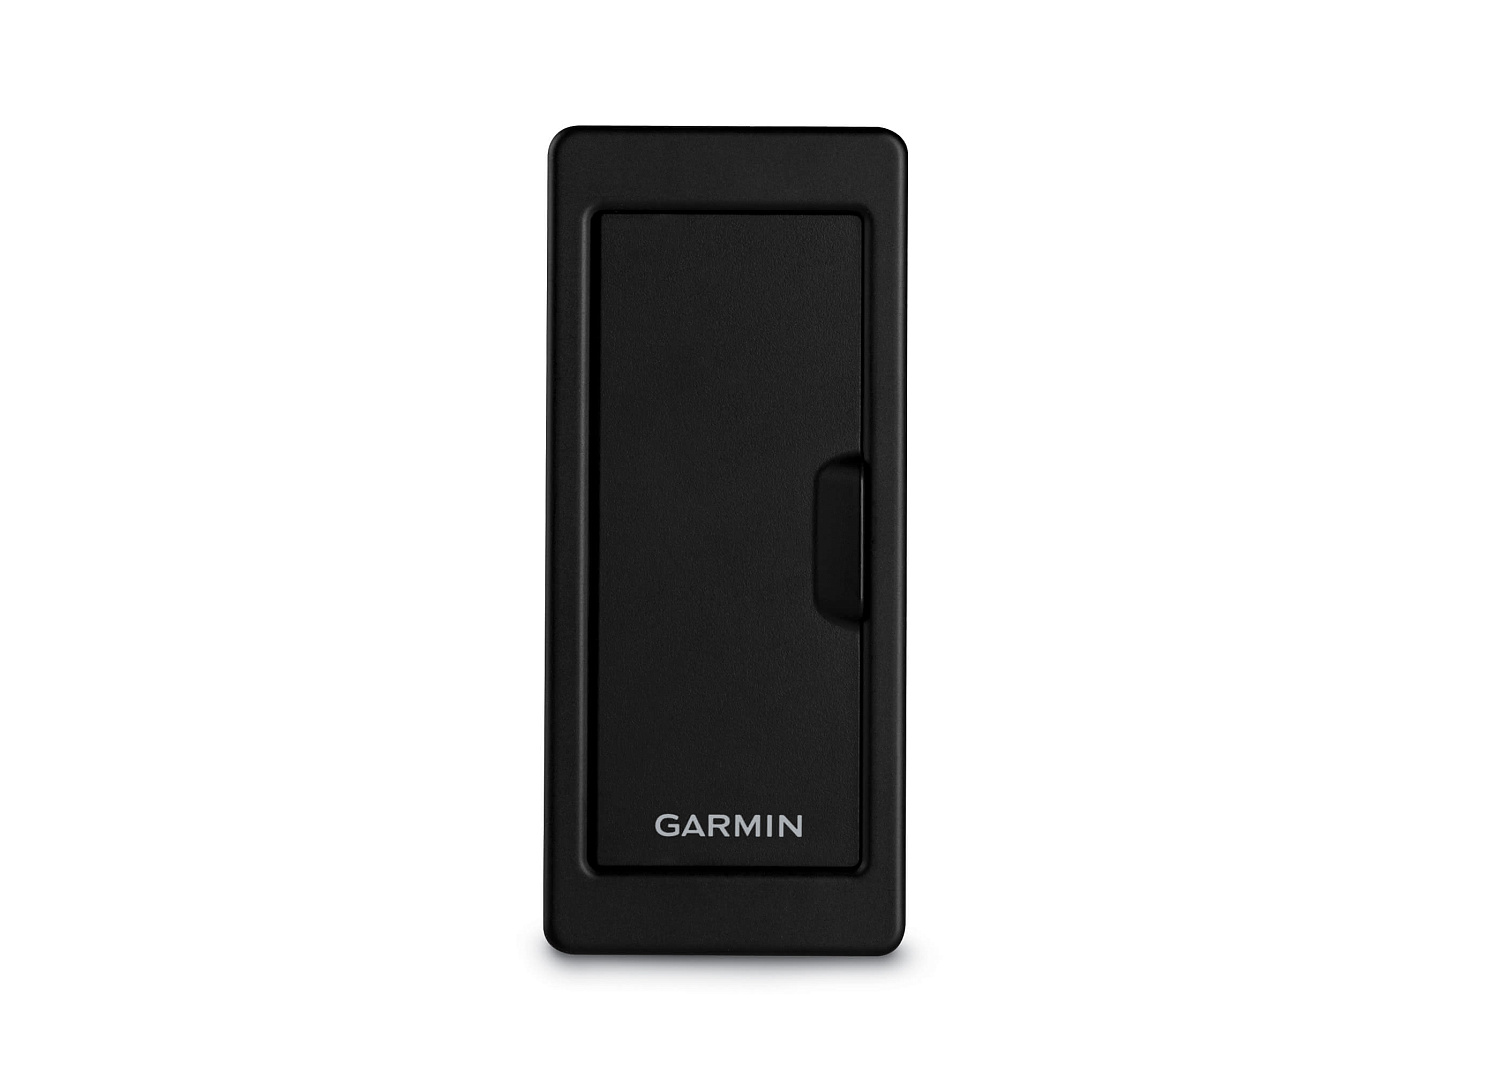 GARMIN SD Card Reader